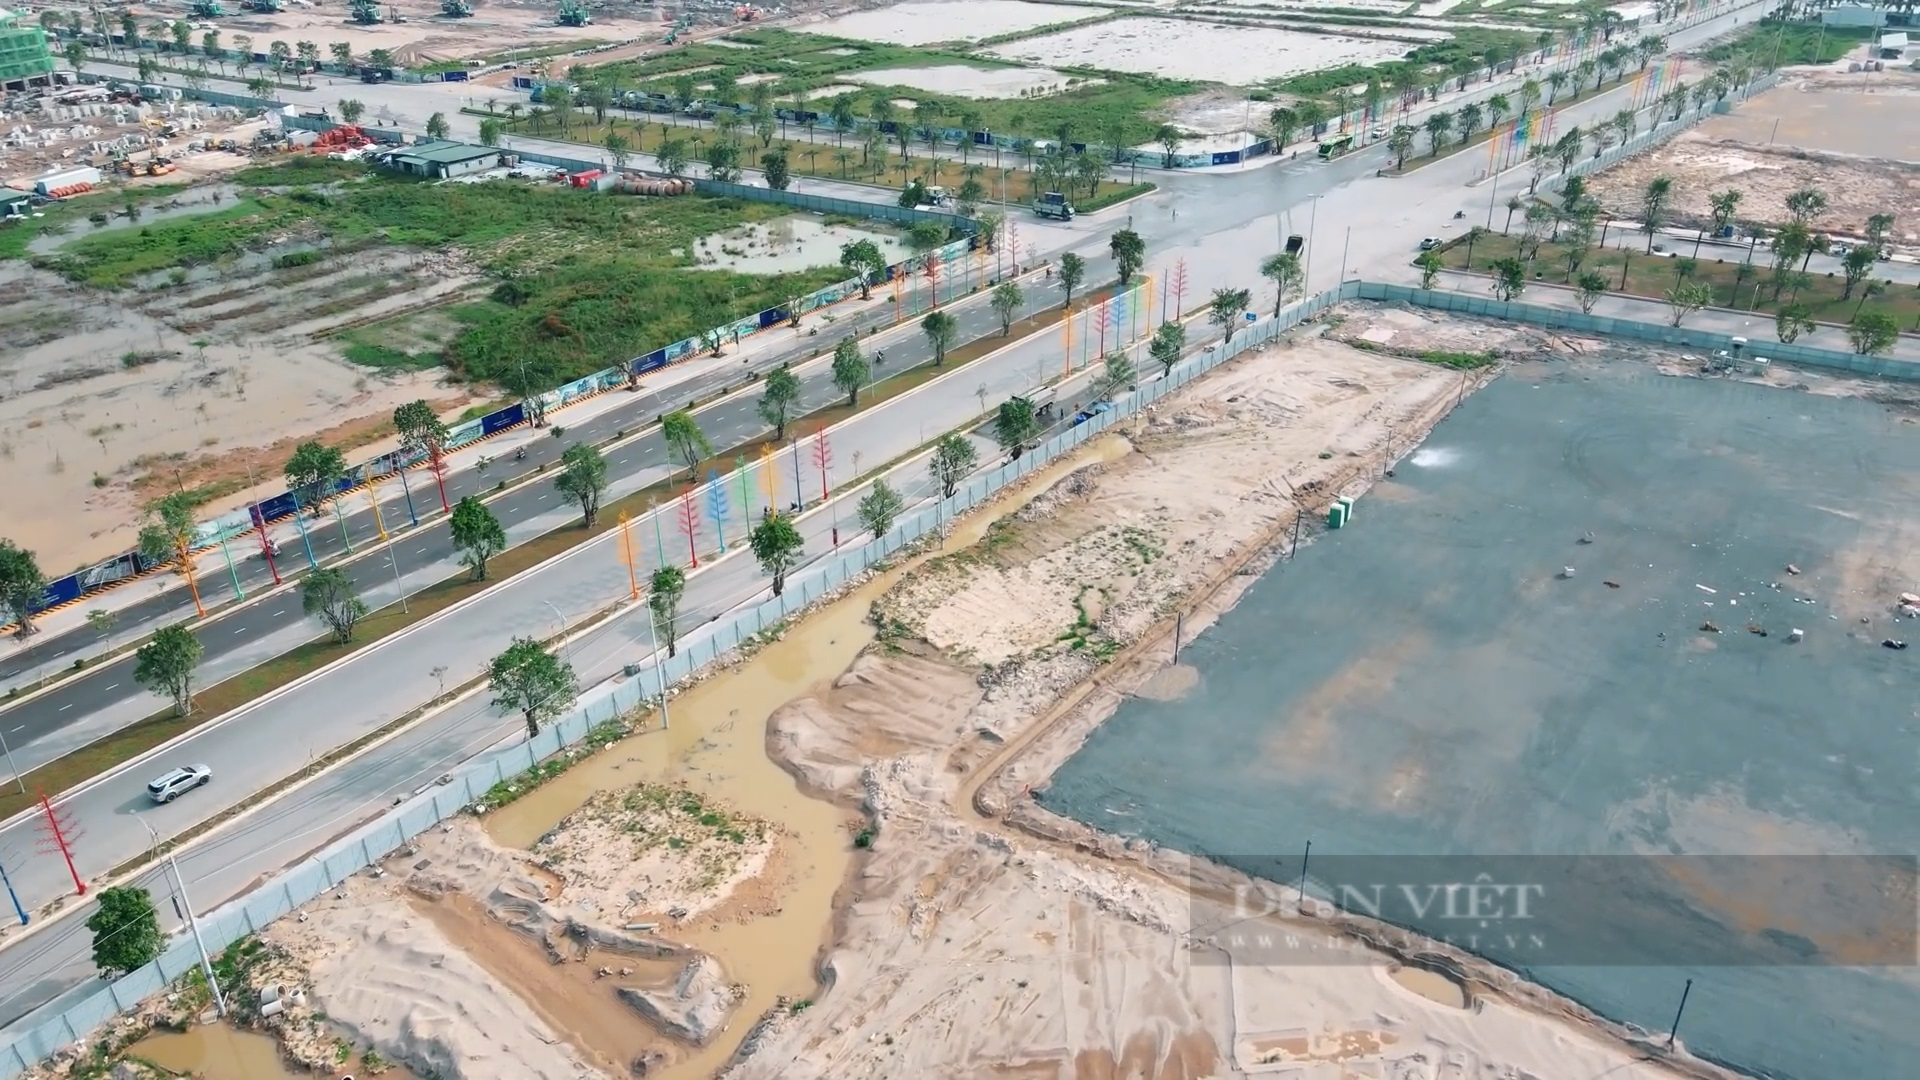 Thị trường bất động sản phía đông Hà Nội hưởng lợi từ các dự án đường Vành đai  - Ảnh 1.